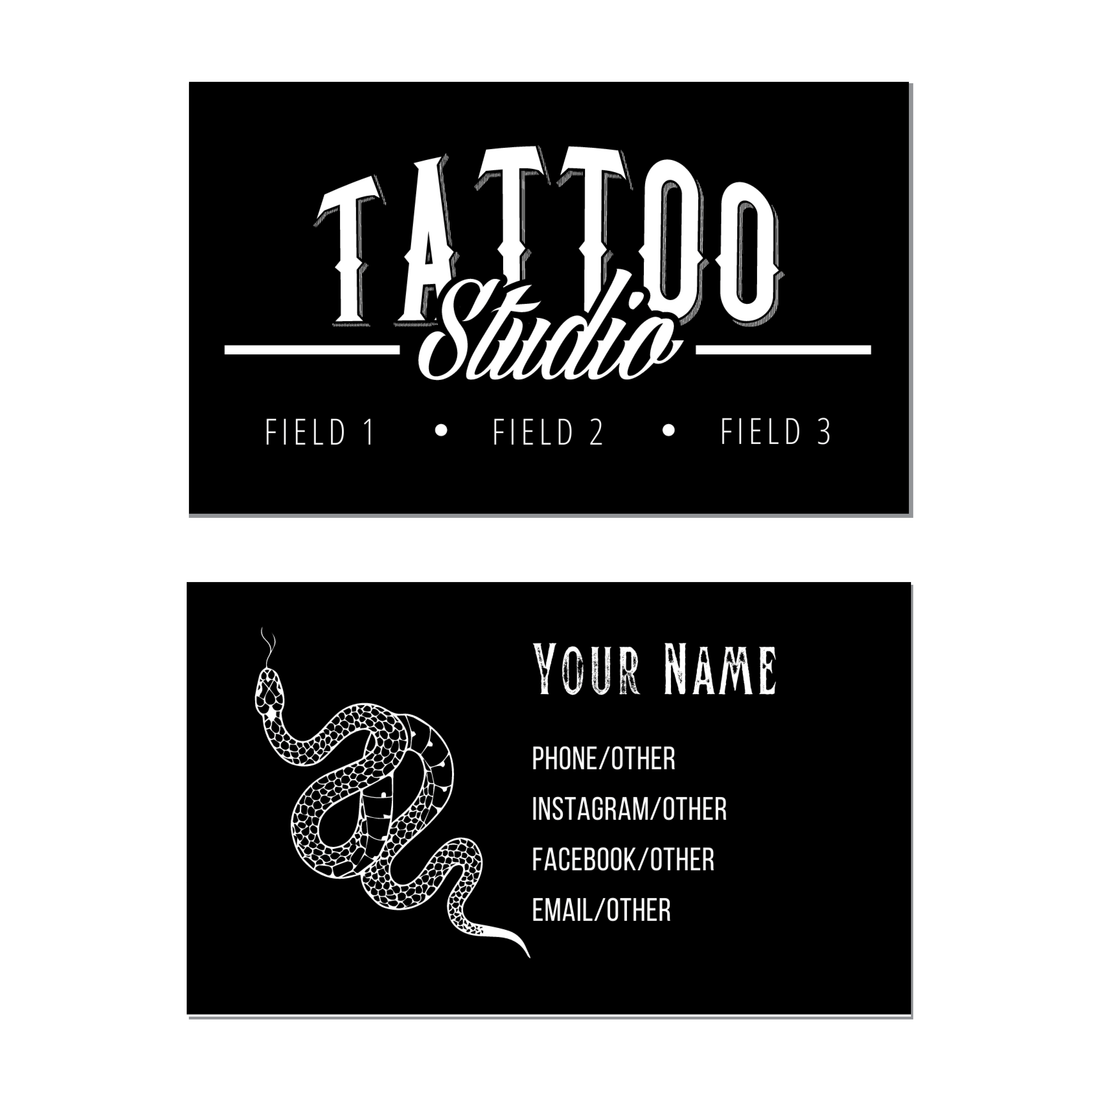 Tattoo Business Card